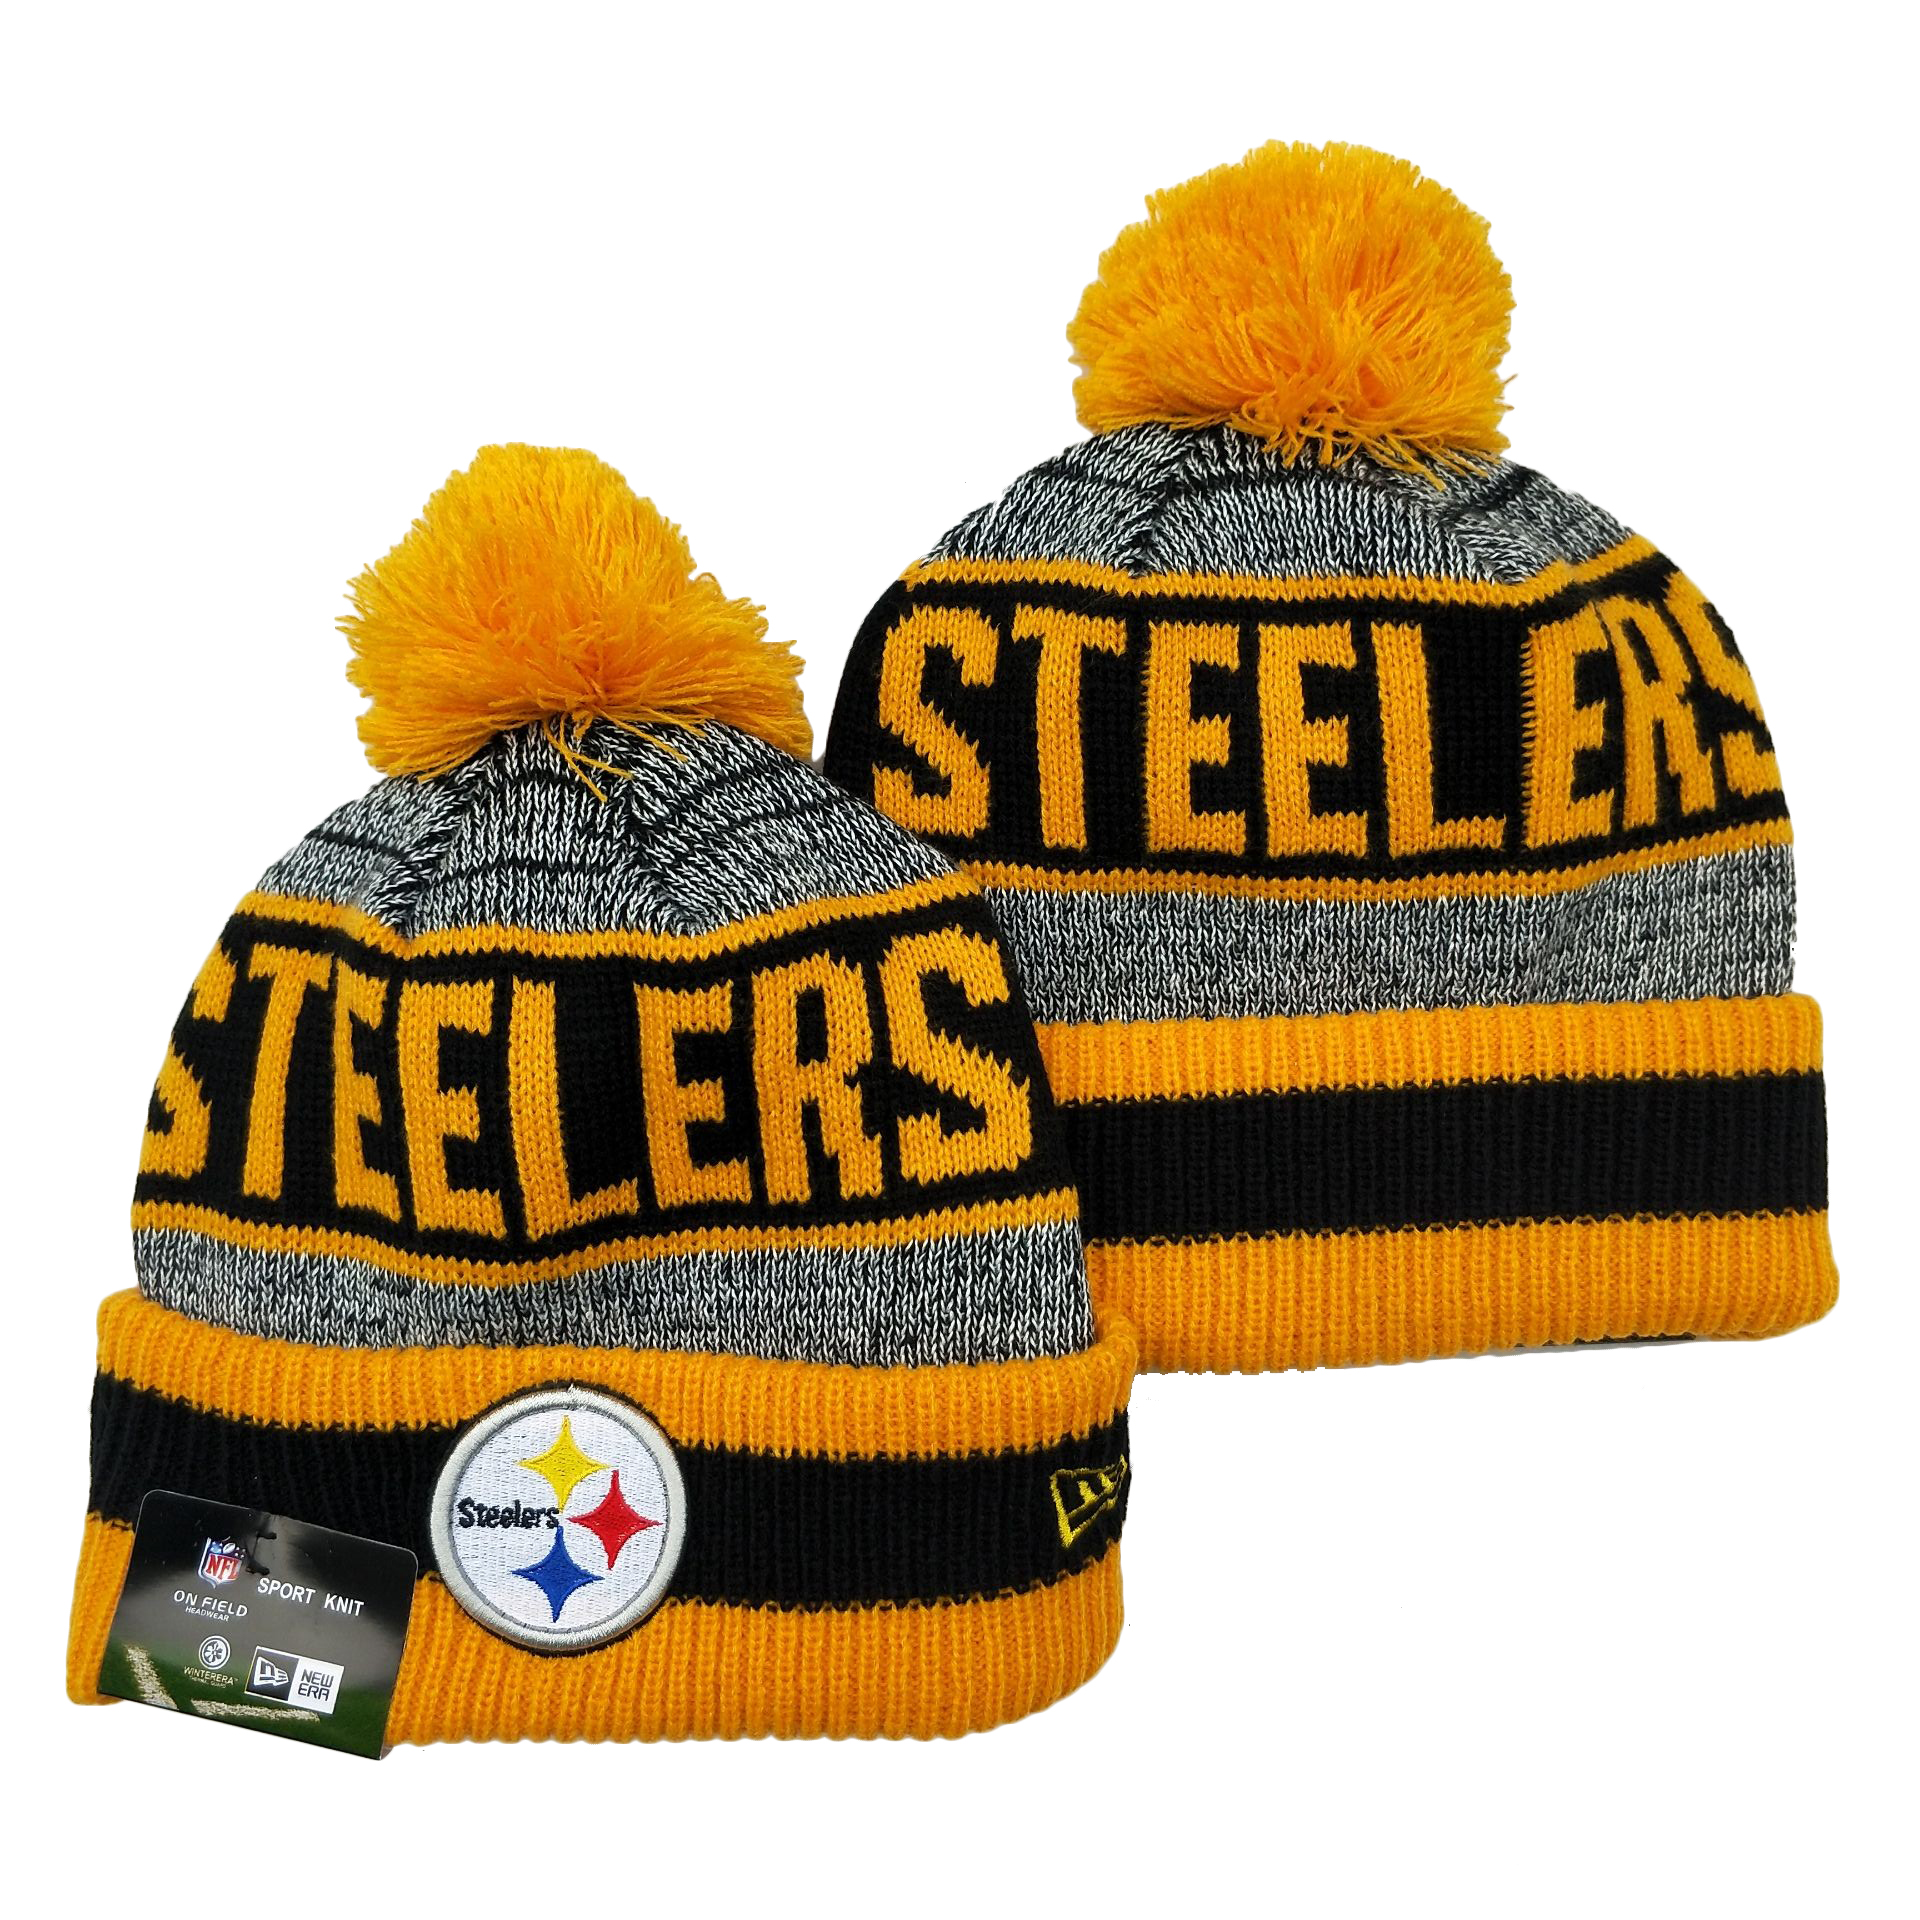 Steelers Team Logo Yellow Pom Cuffed Knit Hat YD